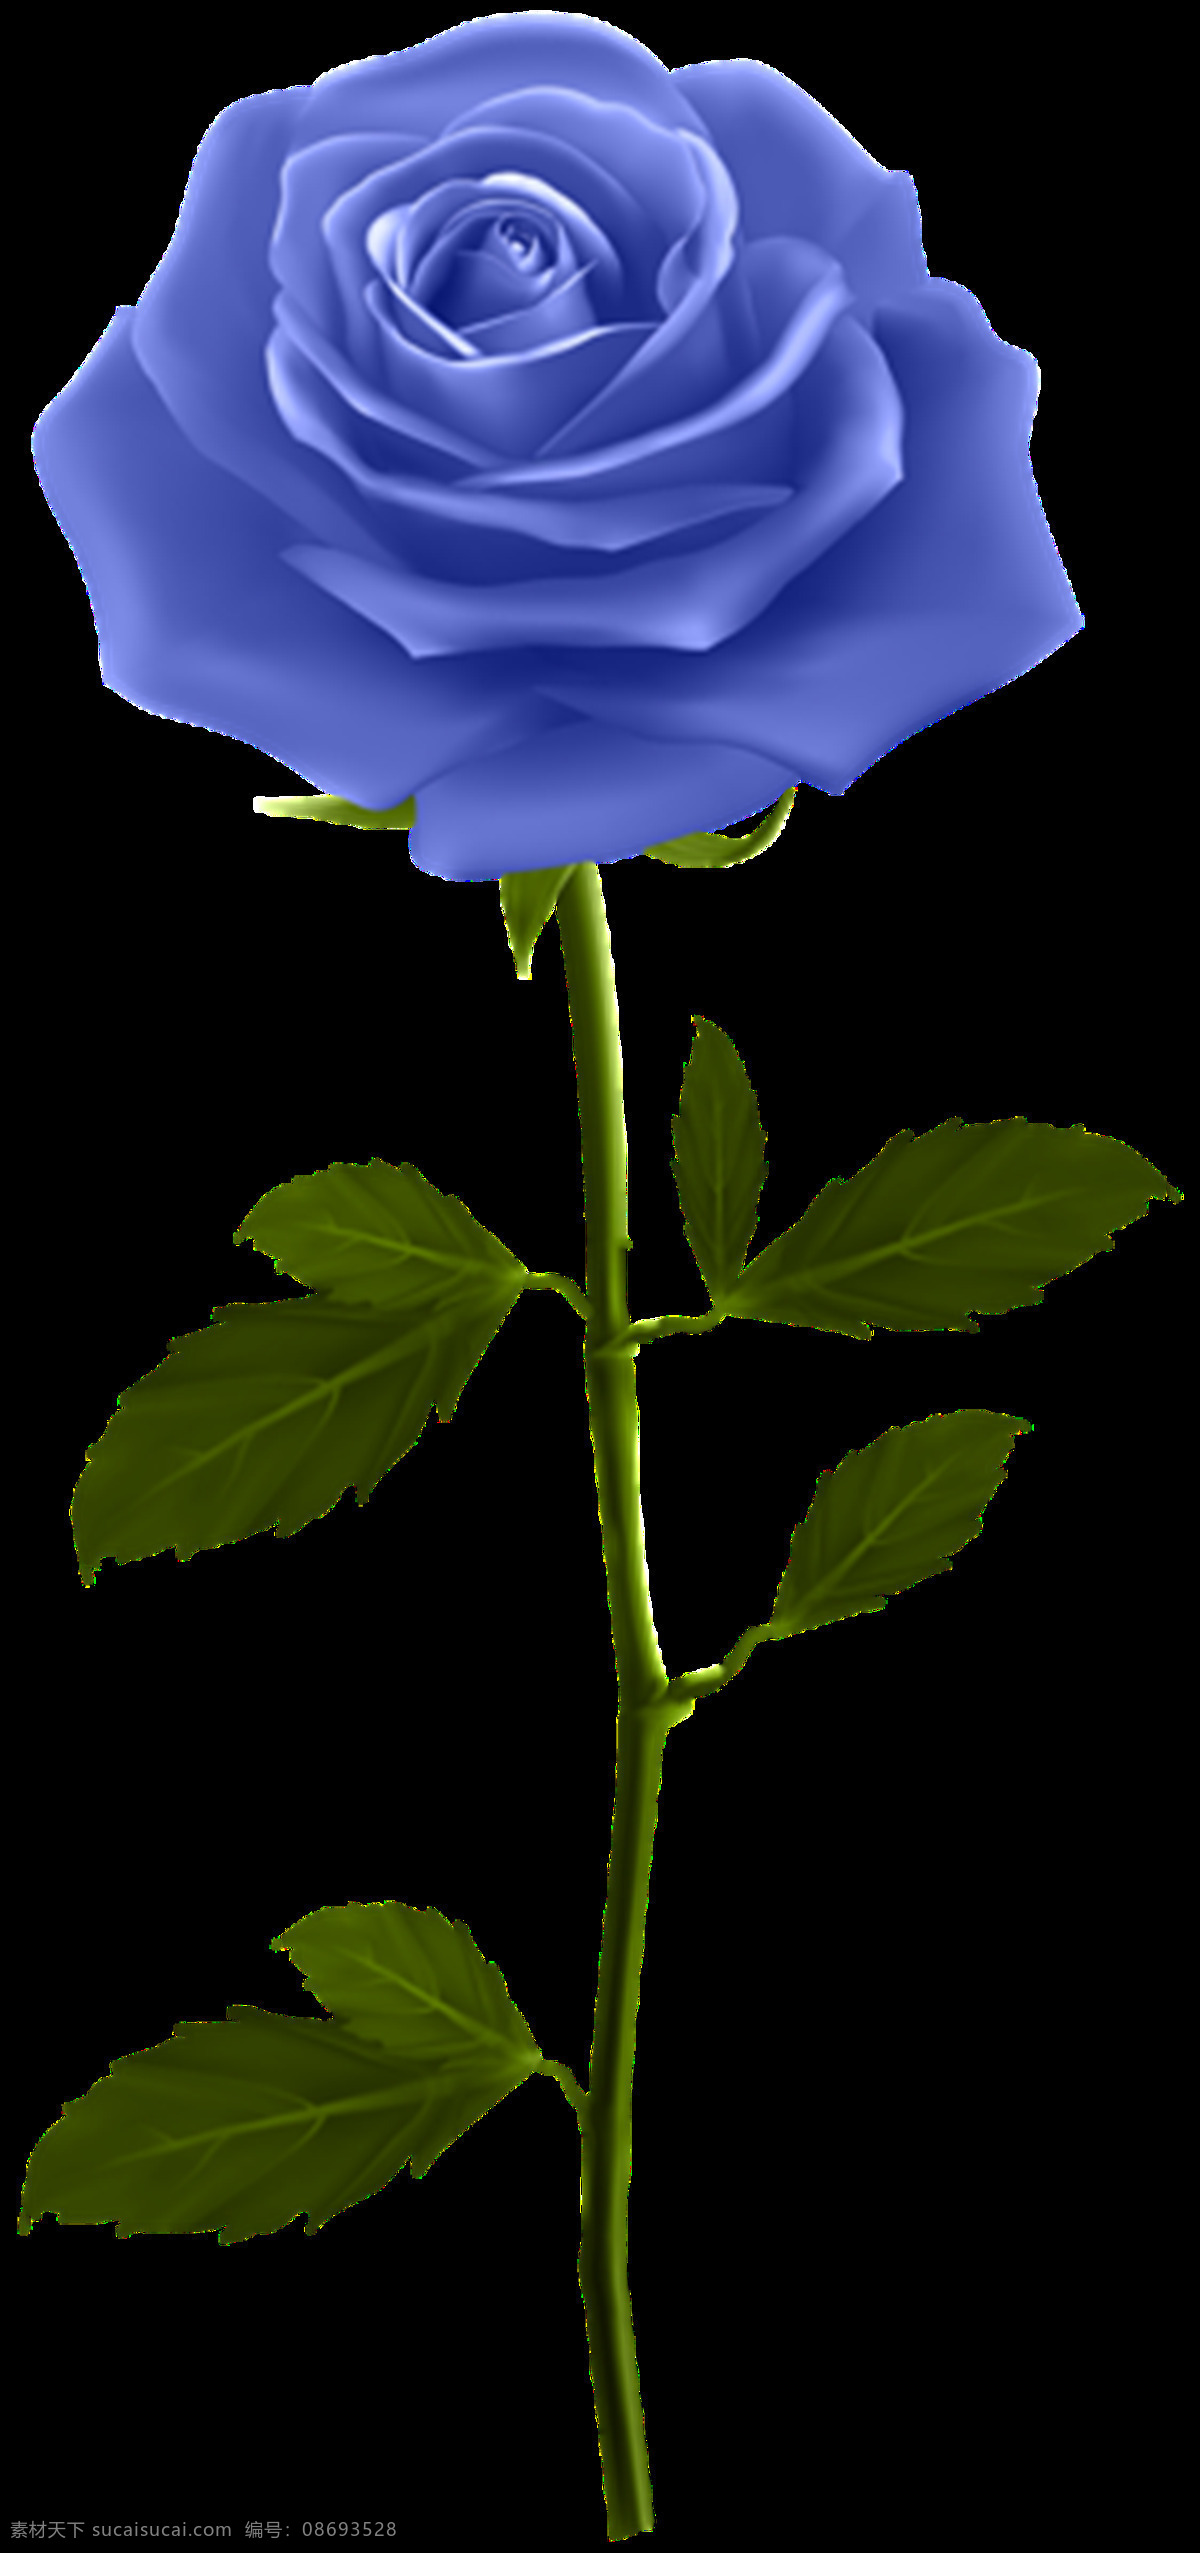 蓝玫瑰图片 玫瑰 白玫瑰 红玫瑰 蓝玫瑰 玫瑰花 黄玫瑰 鲜花 花朵 花 植物 花瓣 花卉 png图 透明图 免扣图 透明背景 透明底 抠图 生物世界 花草